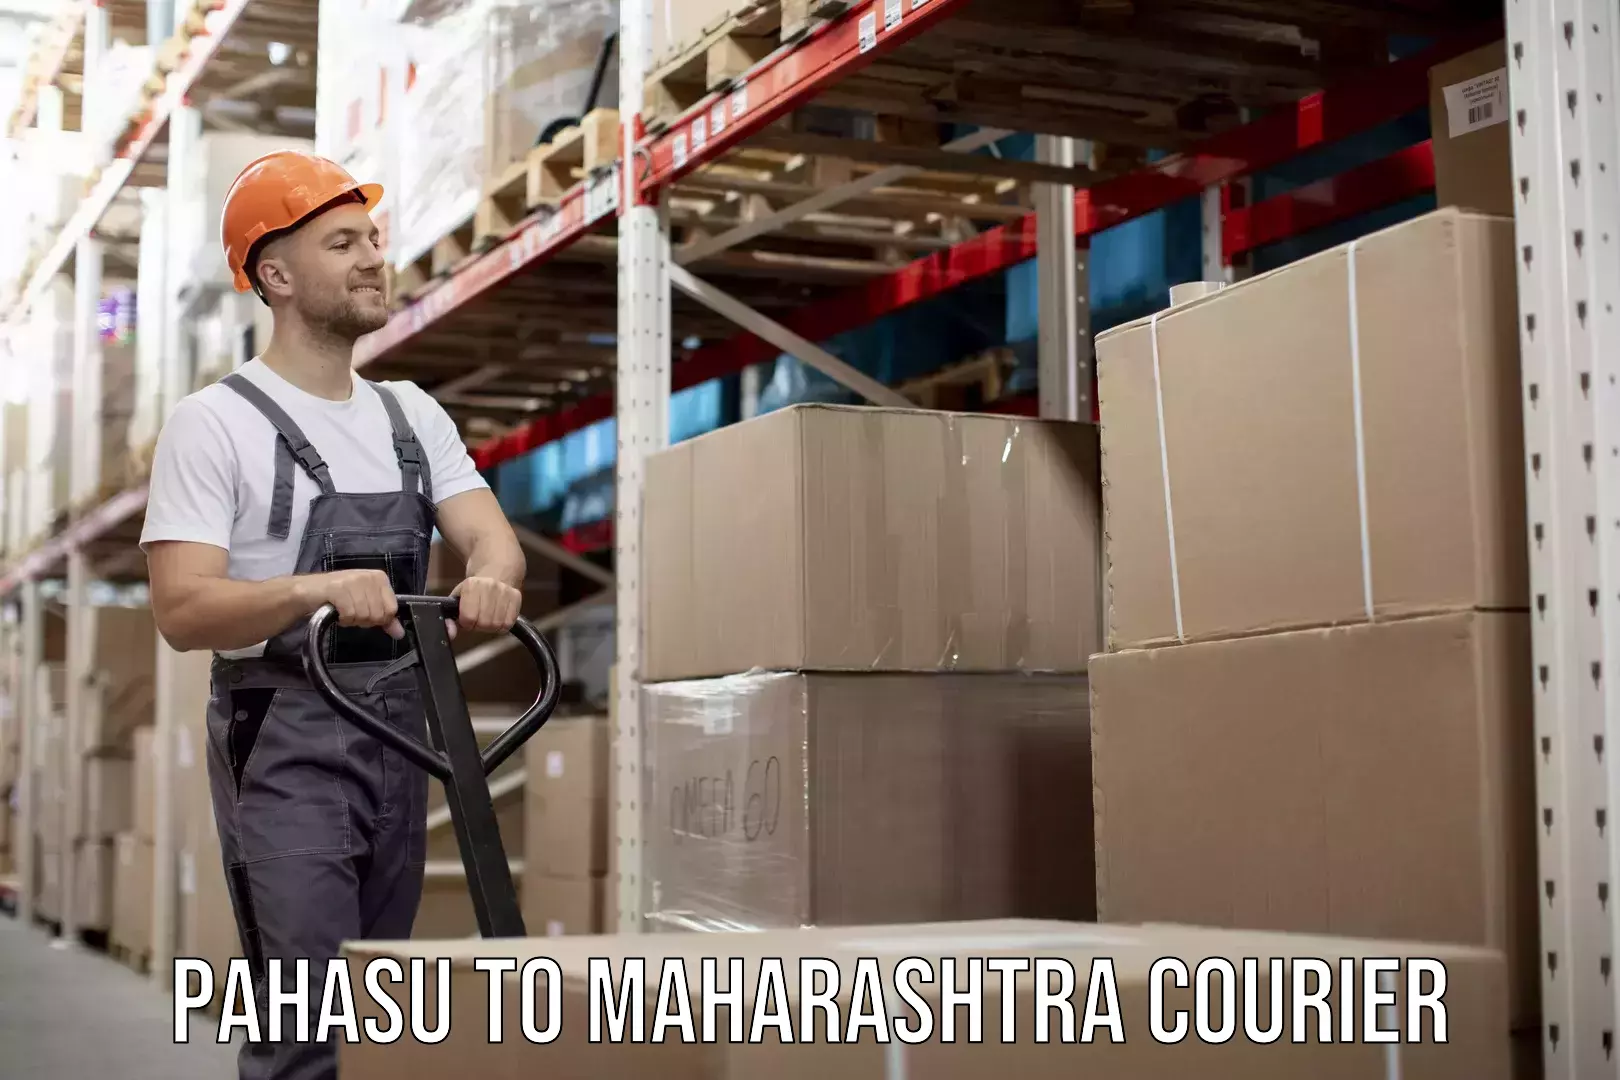 Home moving experts Pahasu to Maharashtra